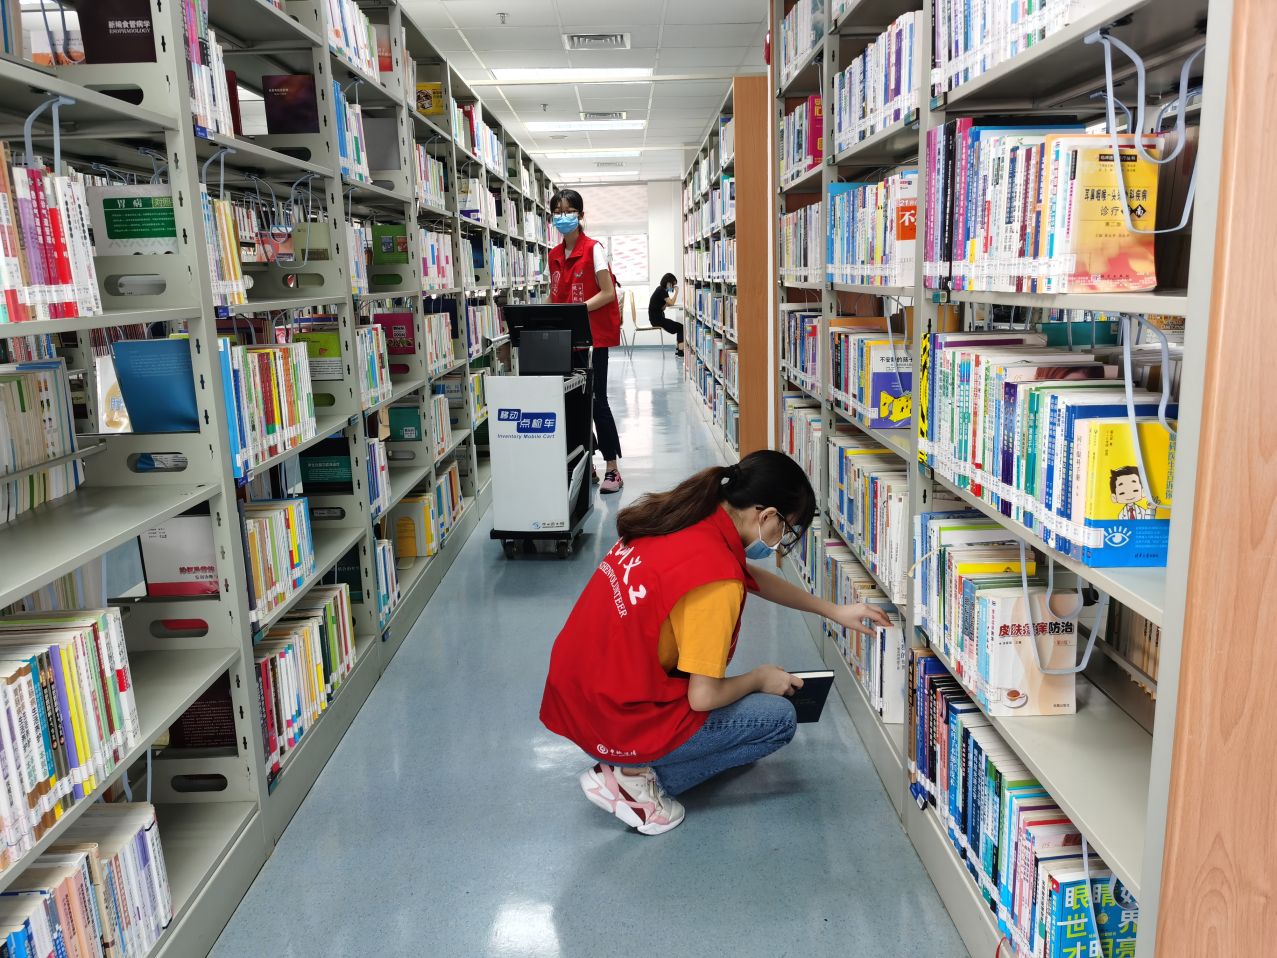 南山图书馆服务--每个周末和寒暑假文化义工在南山图书馆服务--20200808南山文化义工在南山图书馆阅览室图书上架、扫码服务.jpg